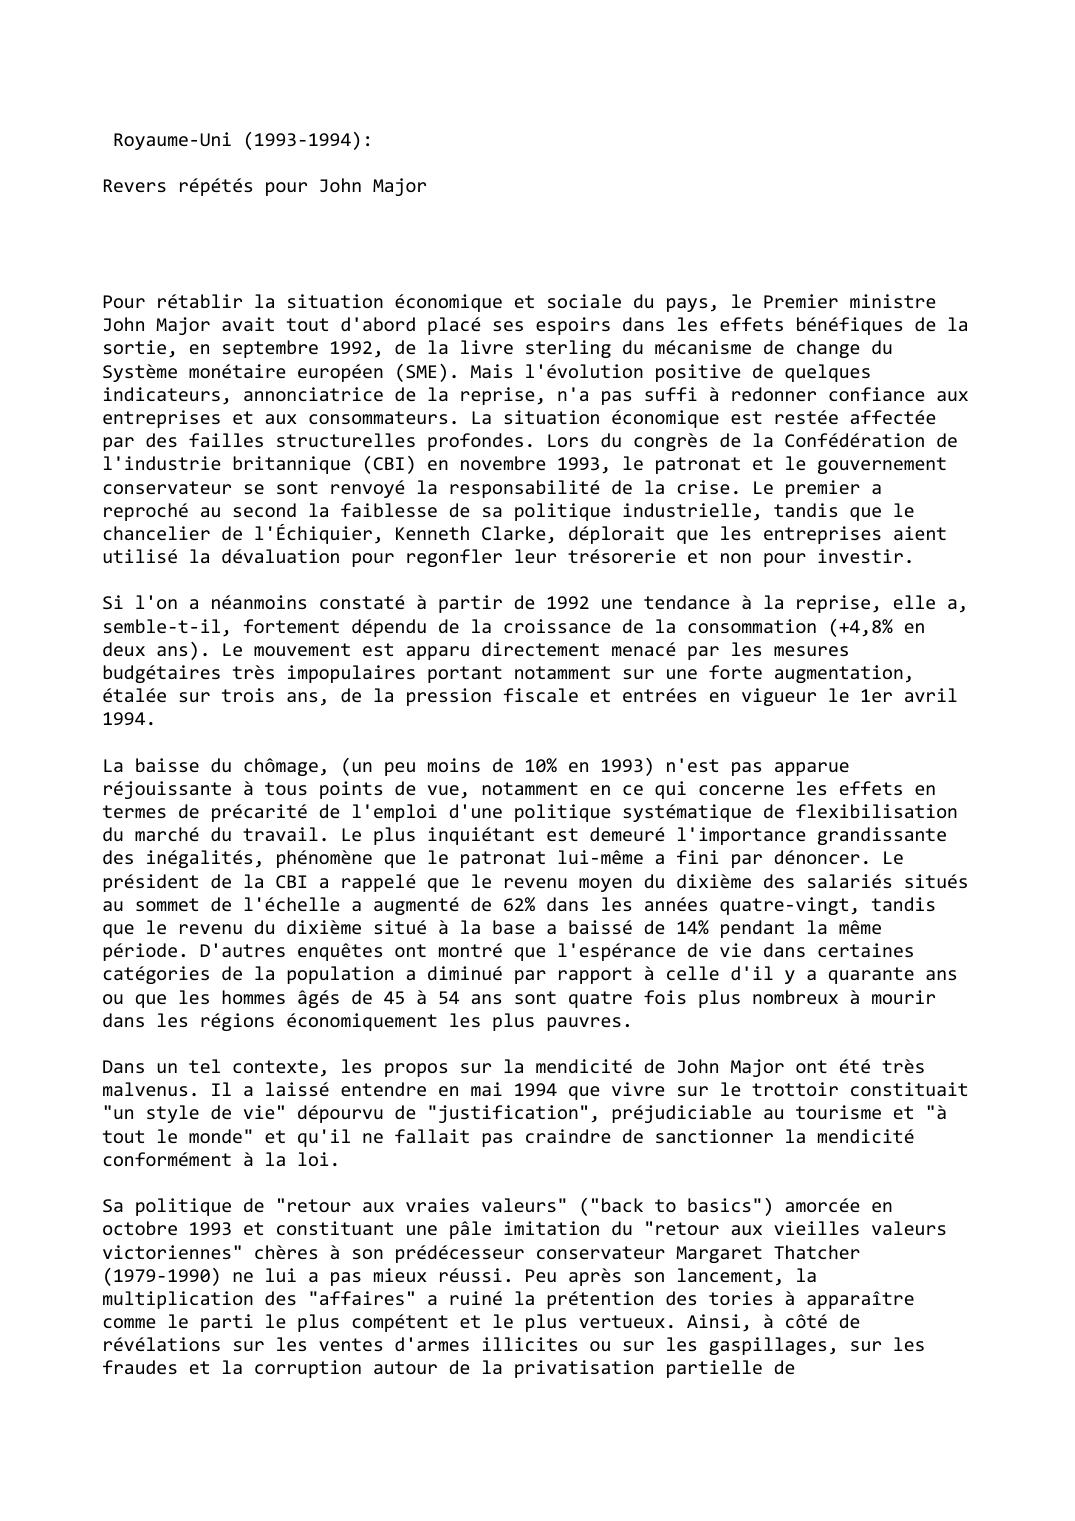 Prévisualisation du document Royaume-Uni (1993-1994):

Revers répétés pour John Major